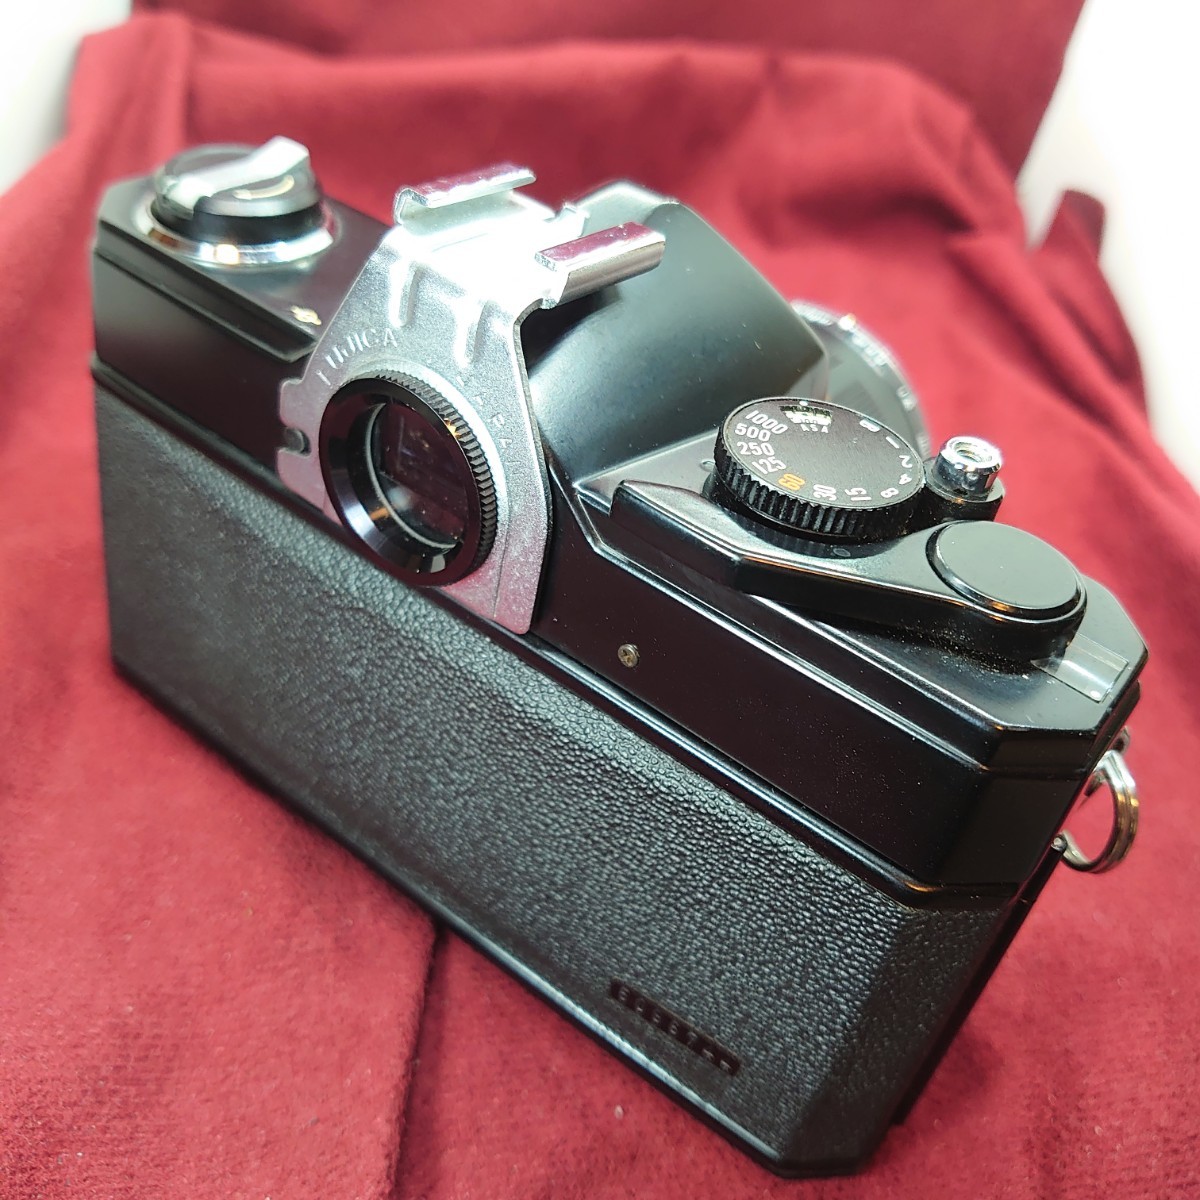 212【シャッターOK】FUJICA ST701 一眼レフフィルムカメラ フジカ LENS FUJINON F:1.8 55mm ブラックボディ+レンズセット_画像4